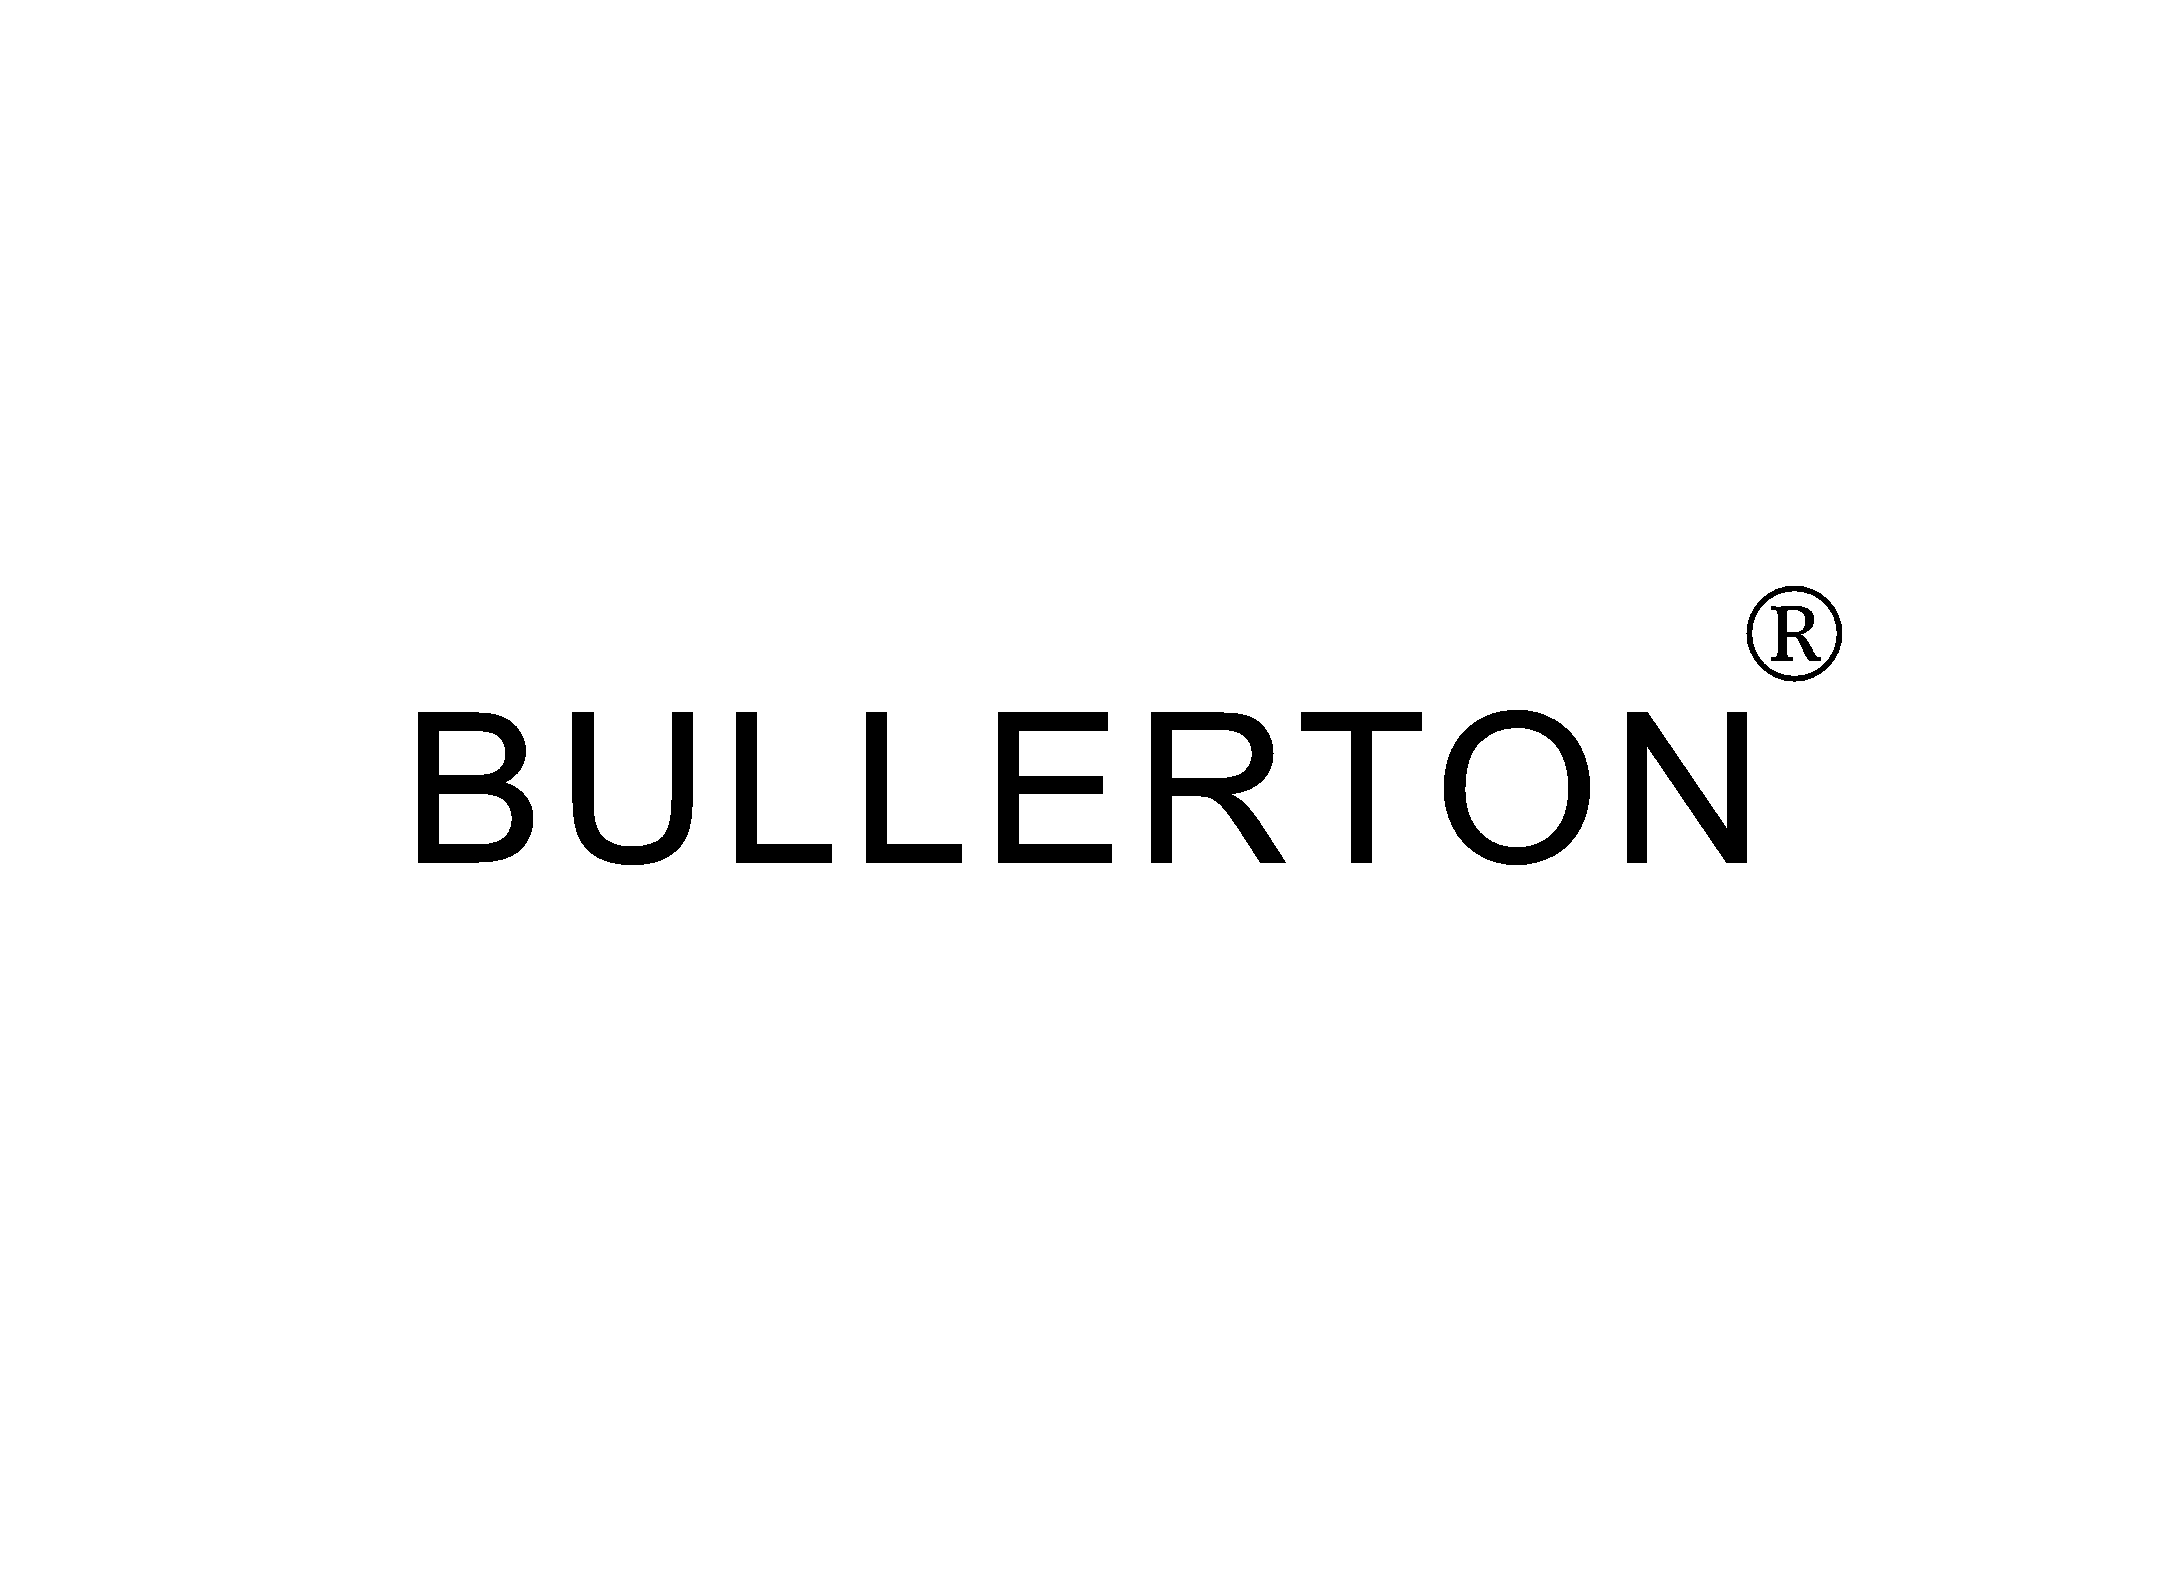 BULLERTON